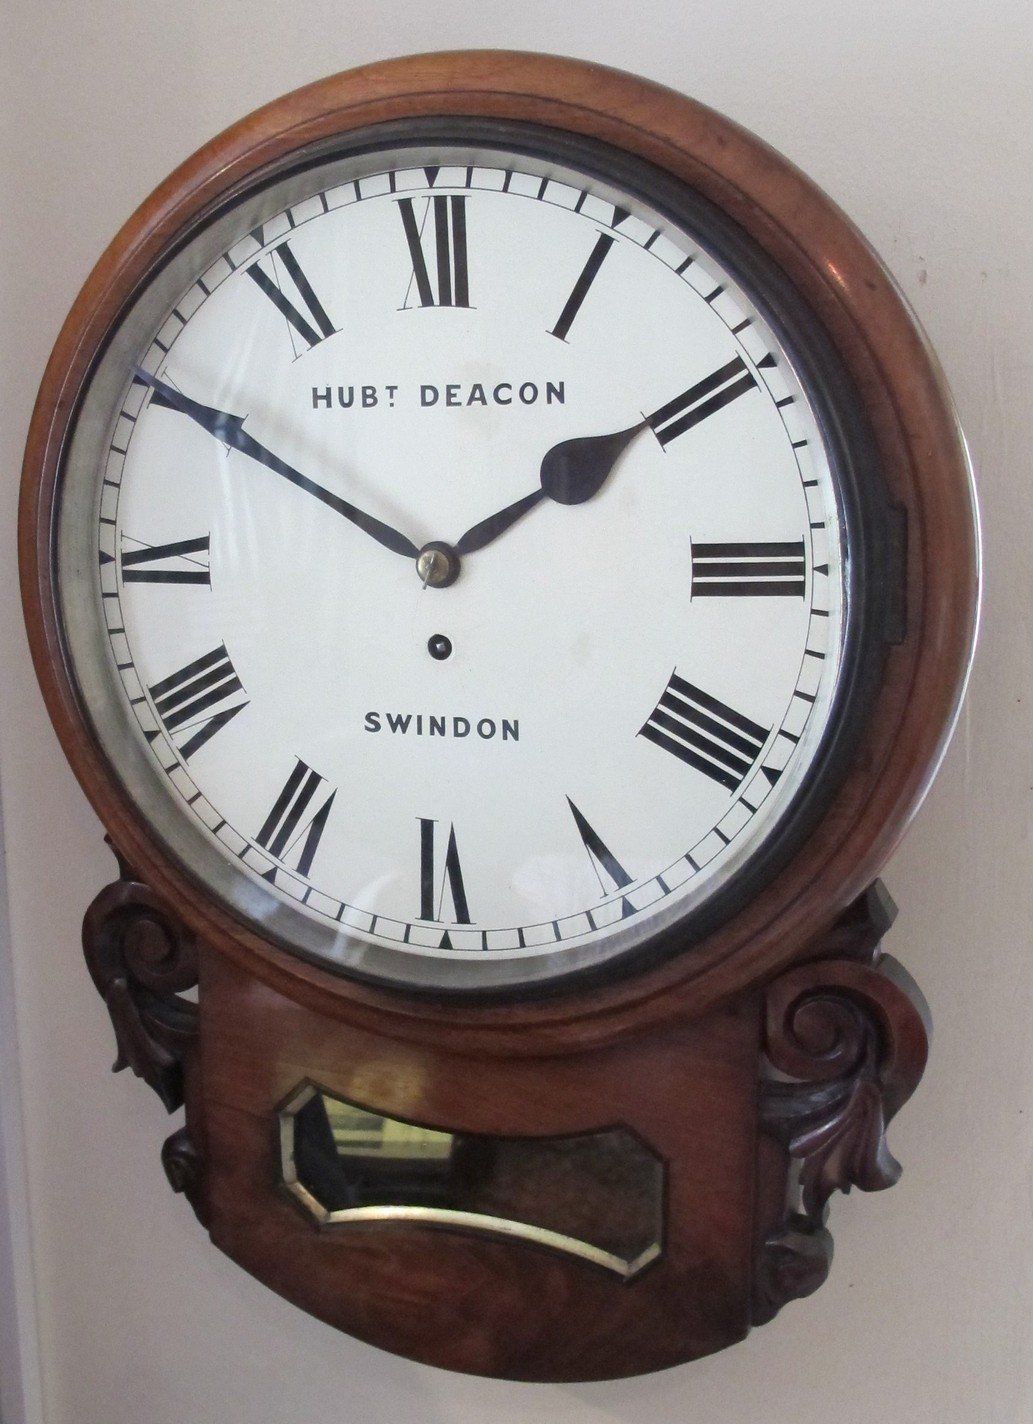 Drop Dial Wall Clock by Hubert Deacon, Swindon